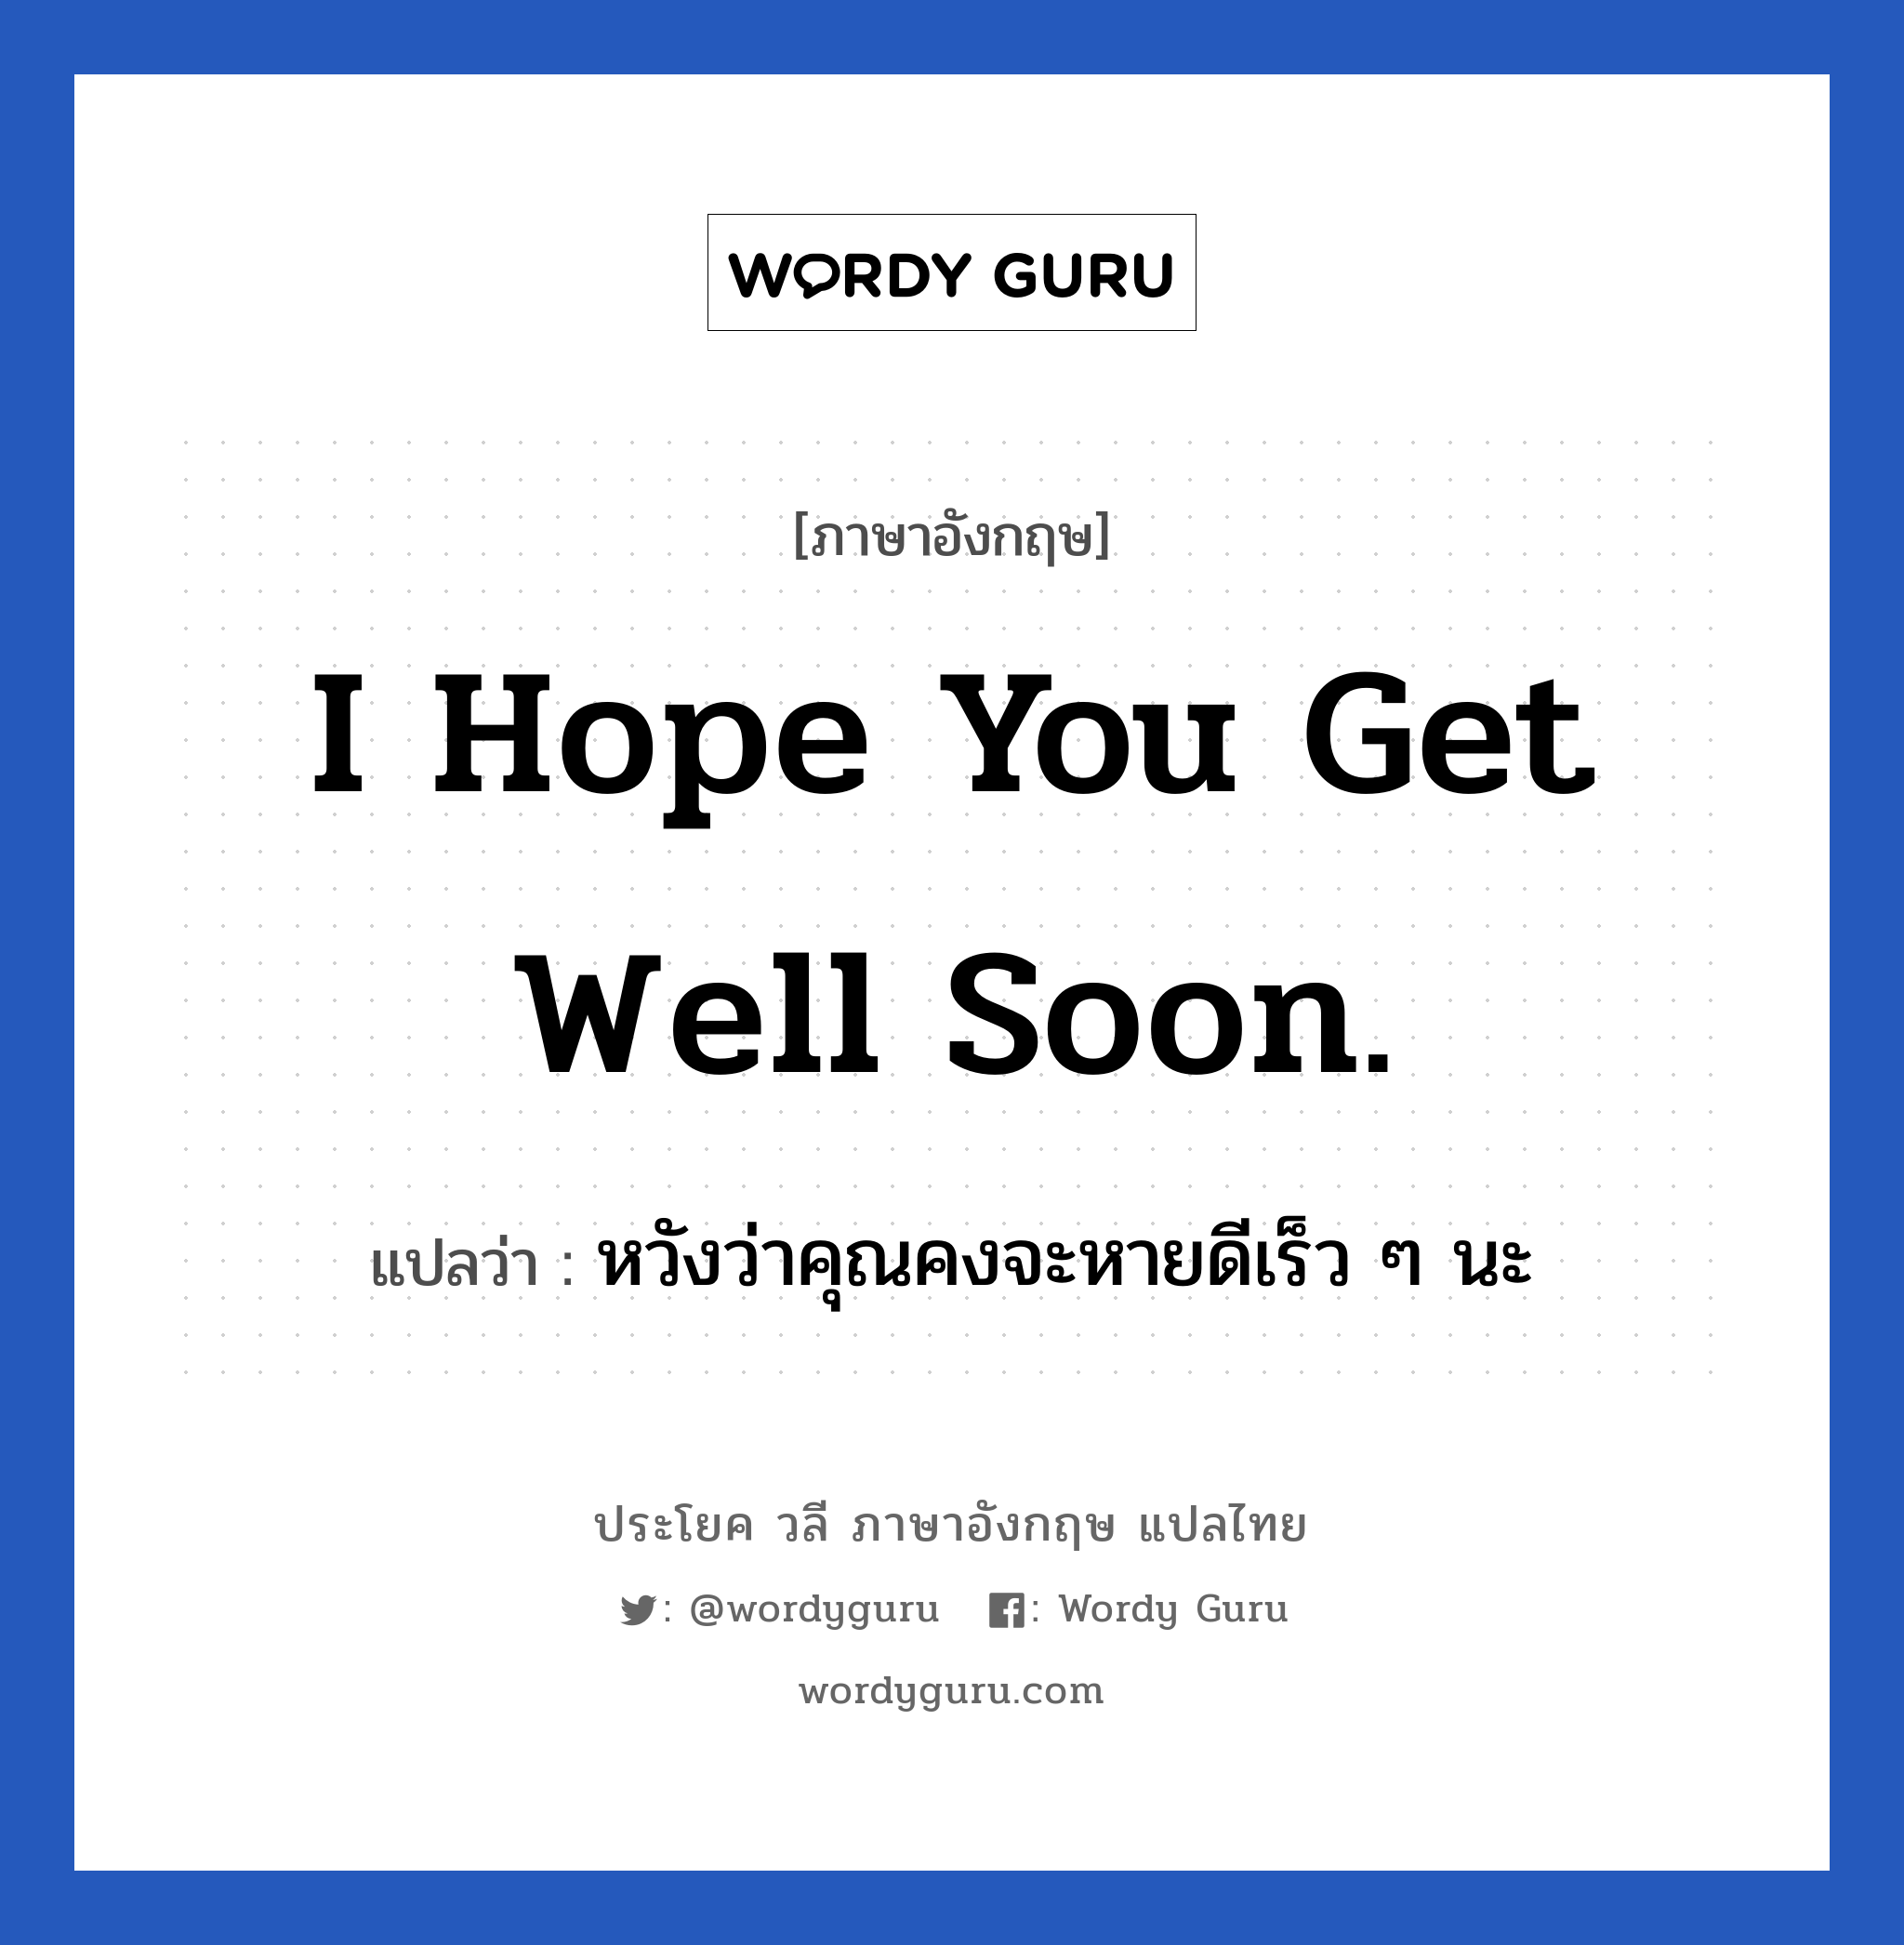 หวังว่าคุณคงจะหายดีเร็ว ๆ นะ ภาษาอังกฤษ?, วลีภาษาอังกฤษ หวังว่าคุณคงจะหายดีเร็ว ๆ นะ แปลว่า I hope you get well soon. หมวด ให้กำลังใจ